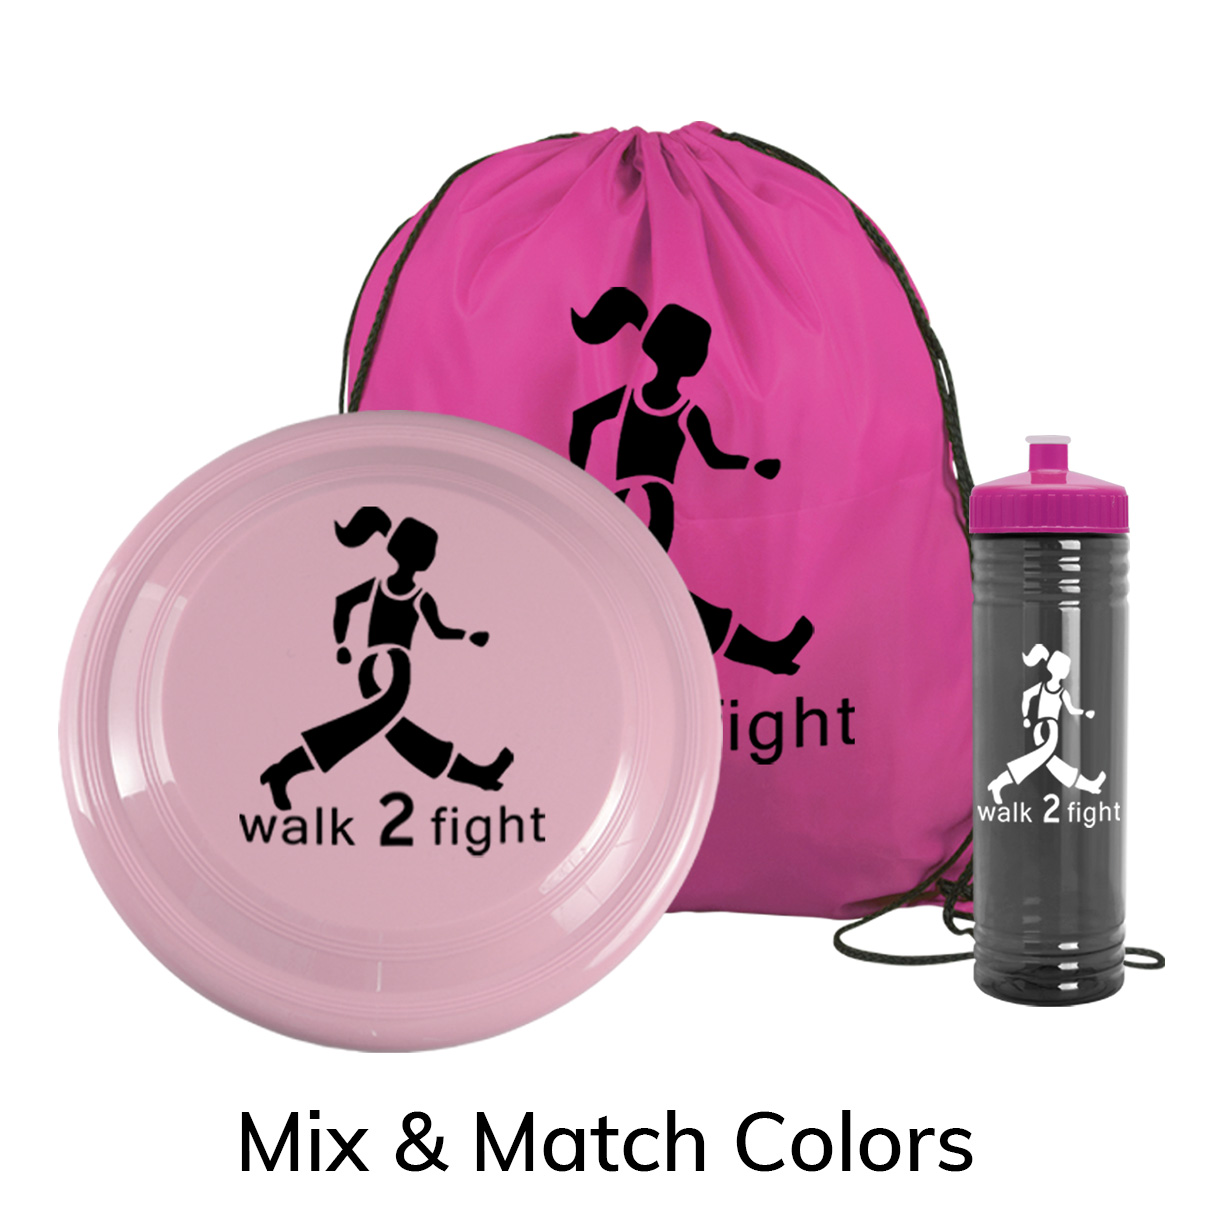 Mix & Match Summer Fun Kit | Assembled